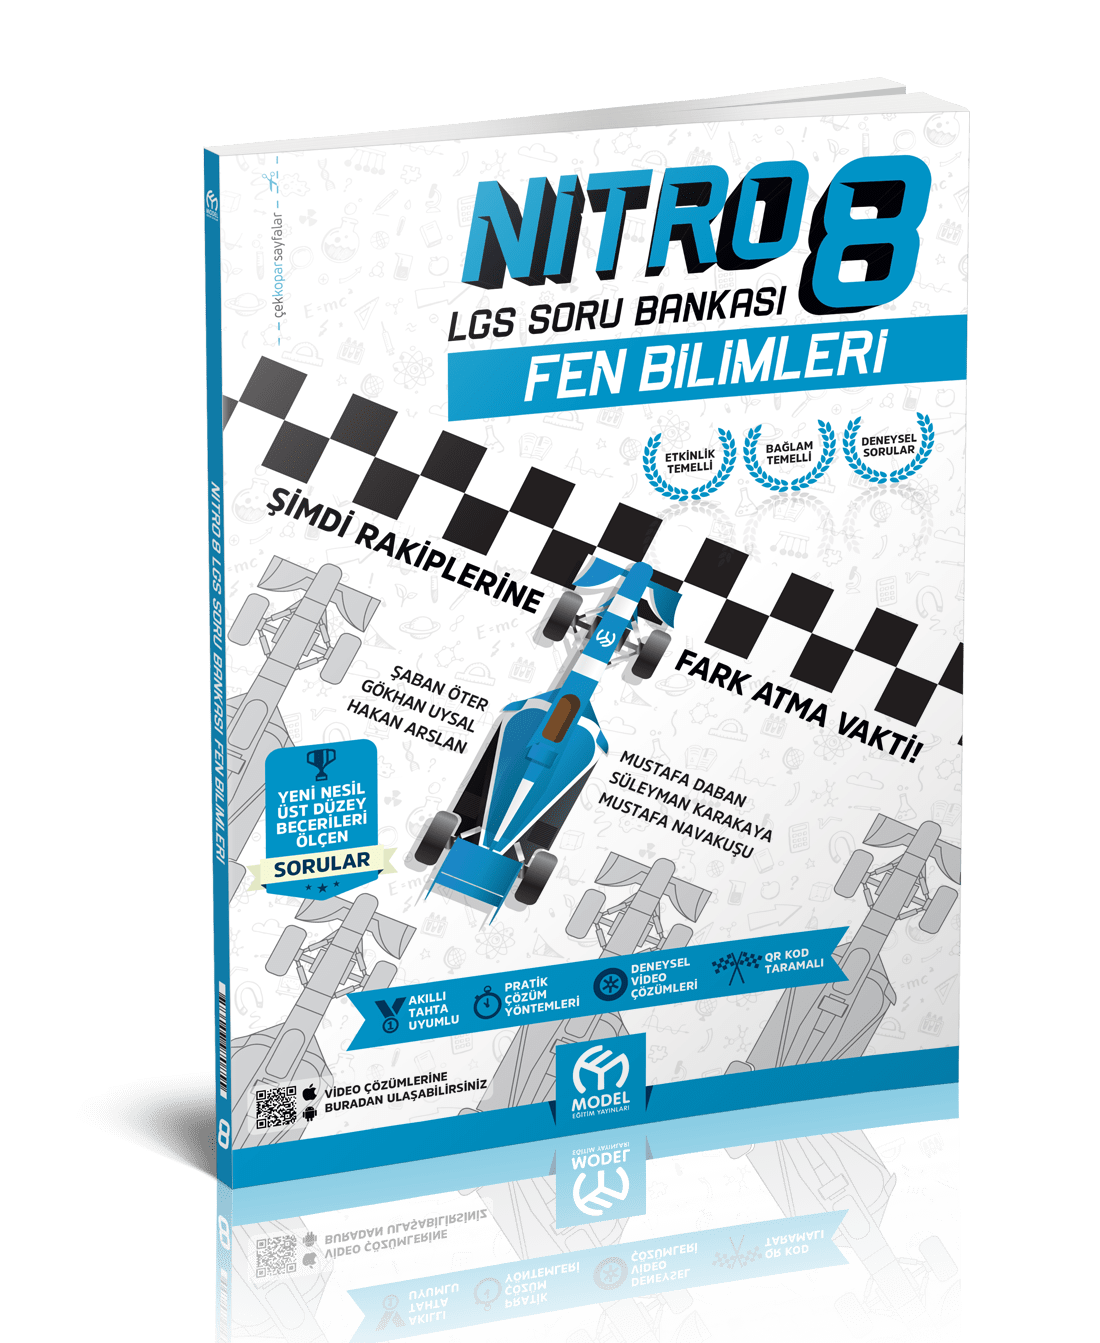 Nitro 8 LGS Soru Bankası FEN BİLİMLERİ